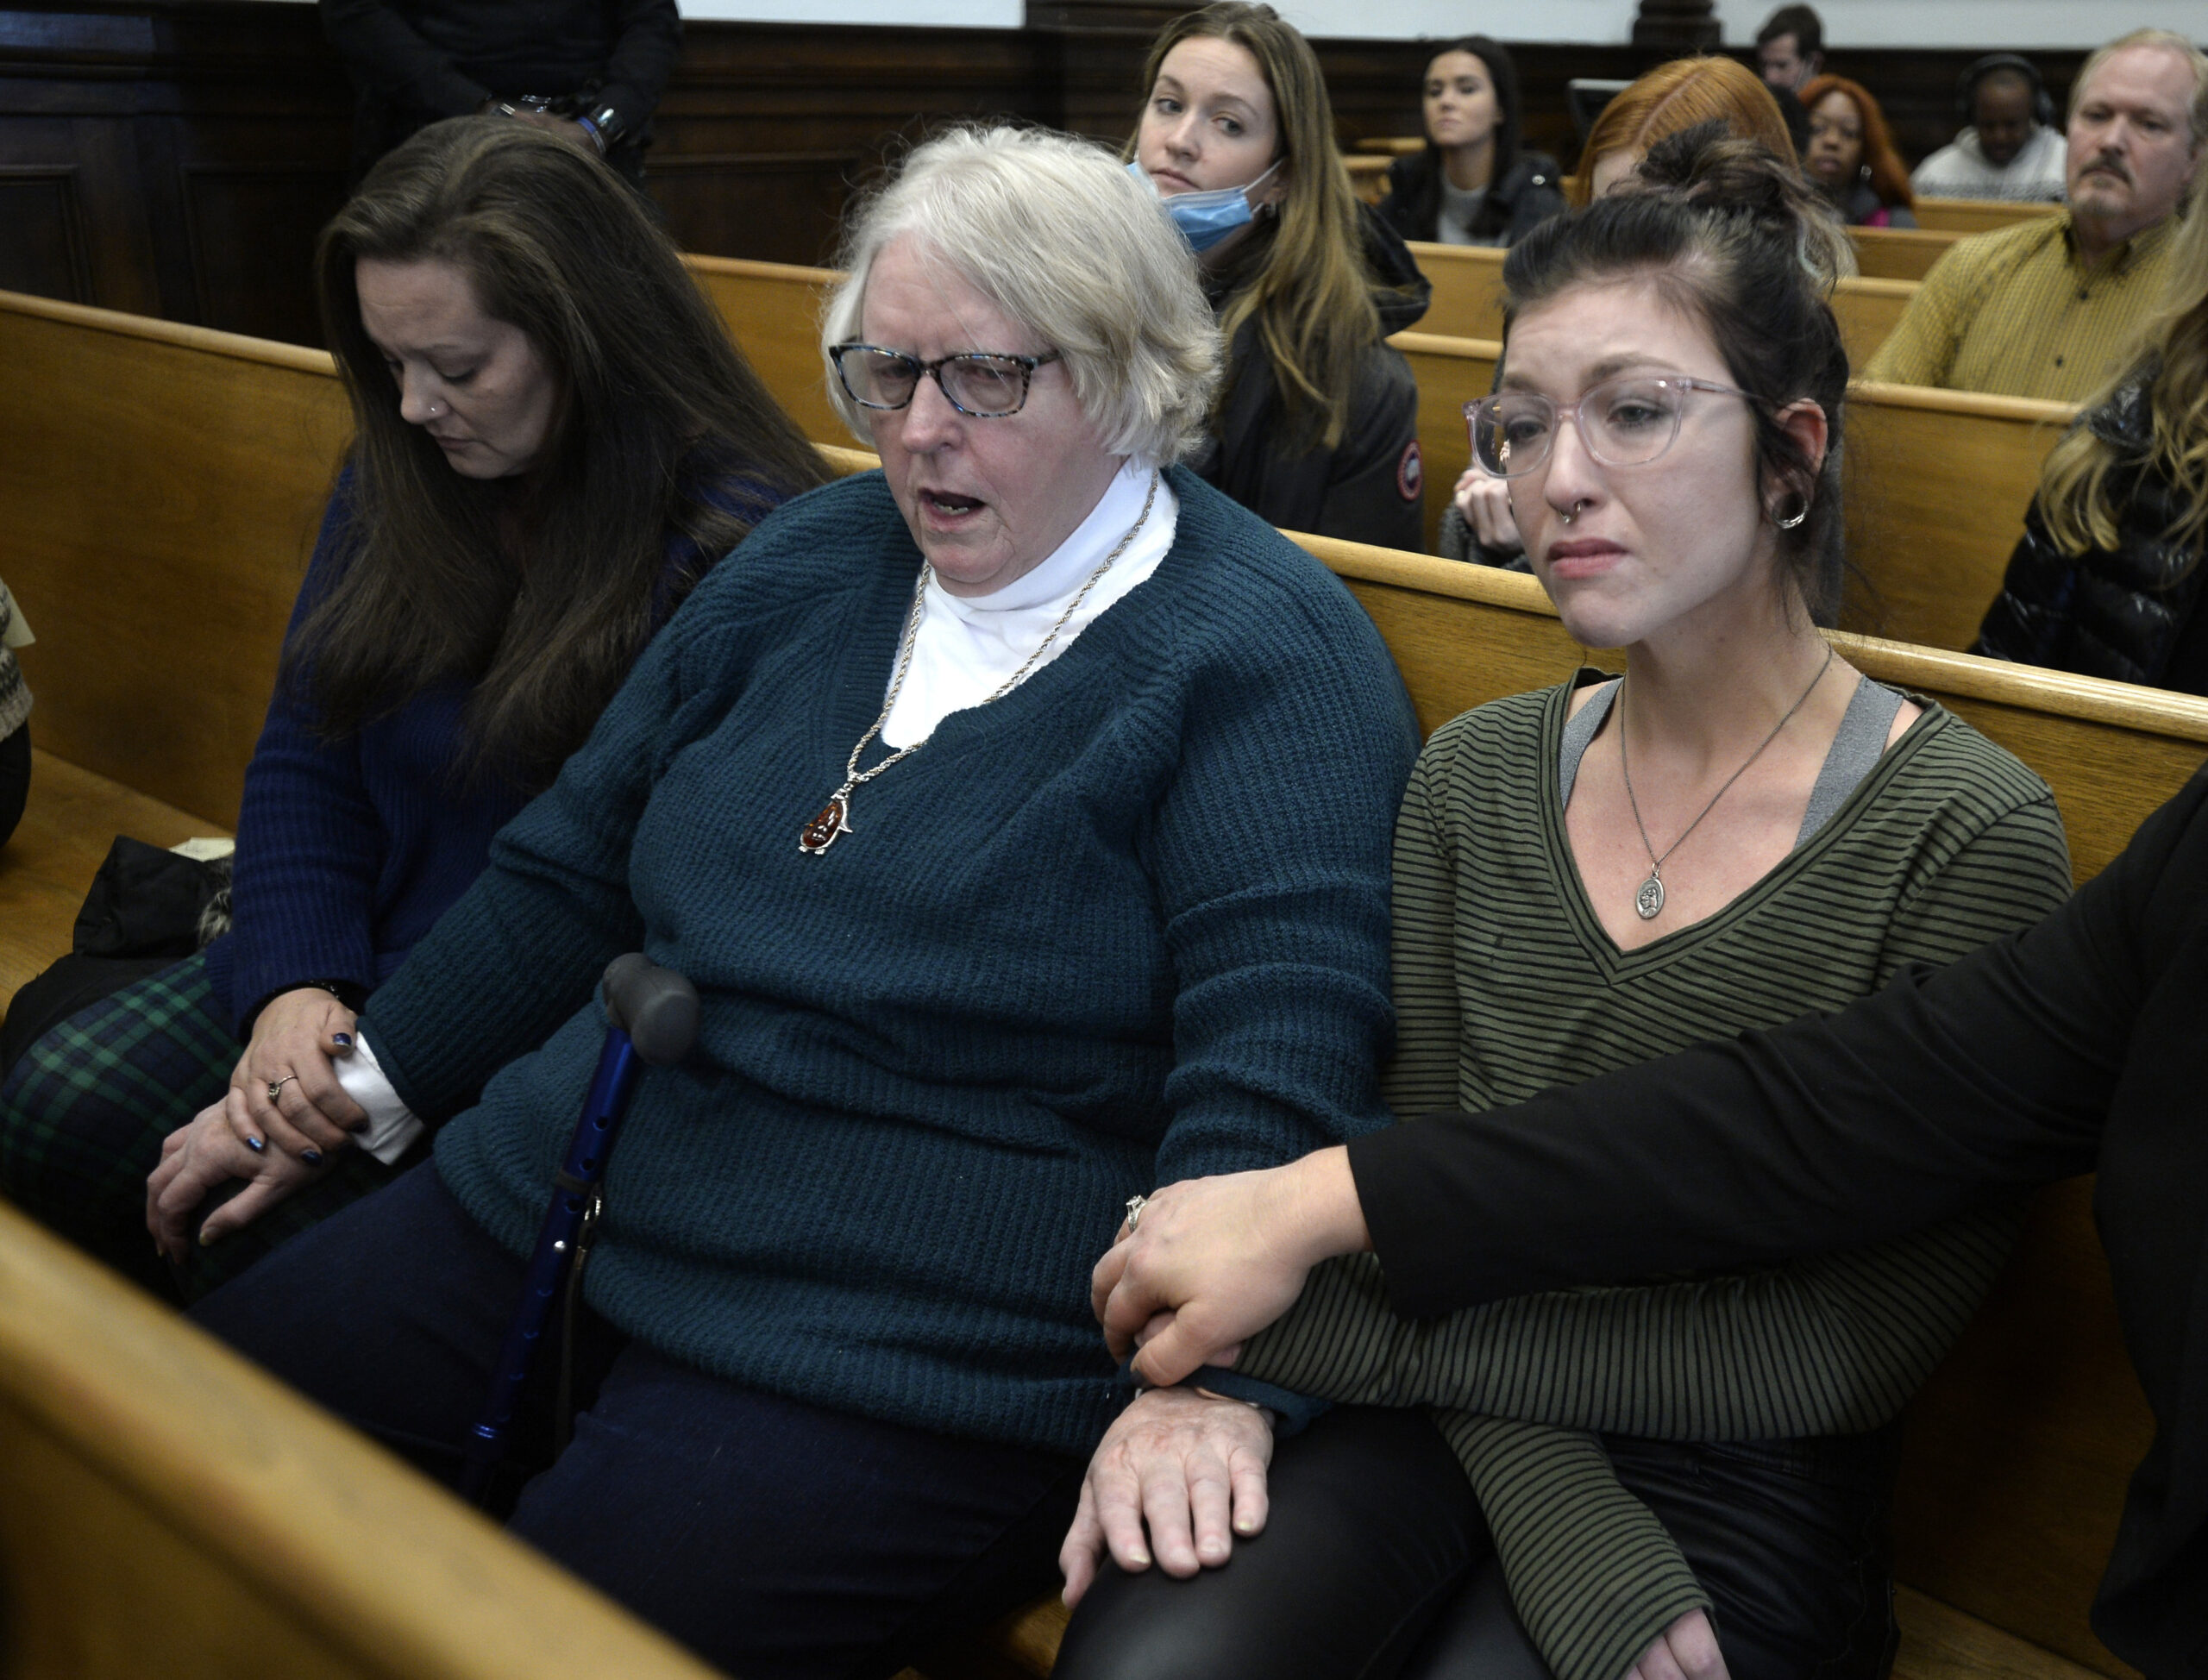 Kariann Swart, Susan Hughes and Hannah Gittings listen as Kyle Rittenhouse is found not guilty